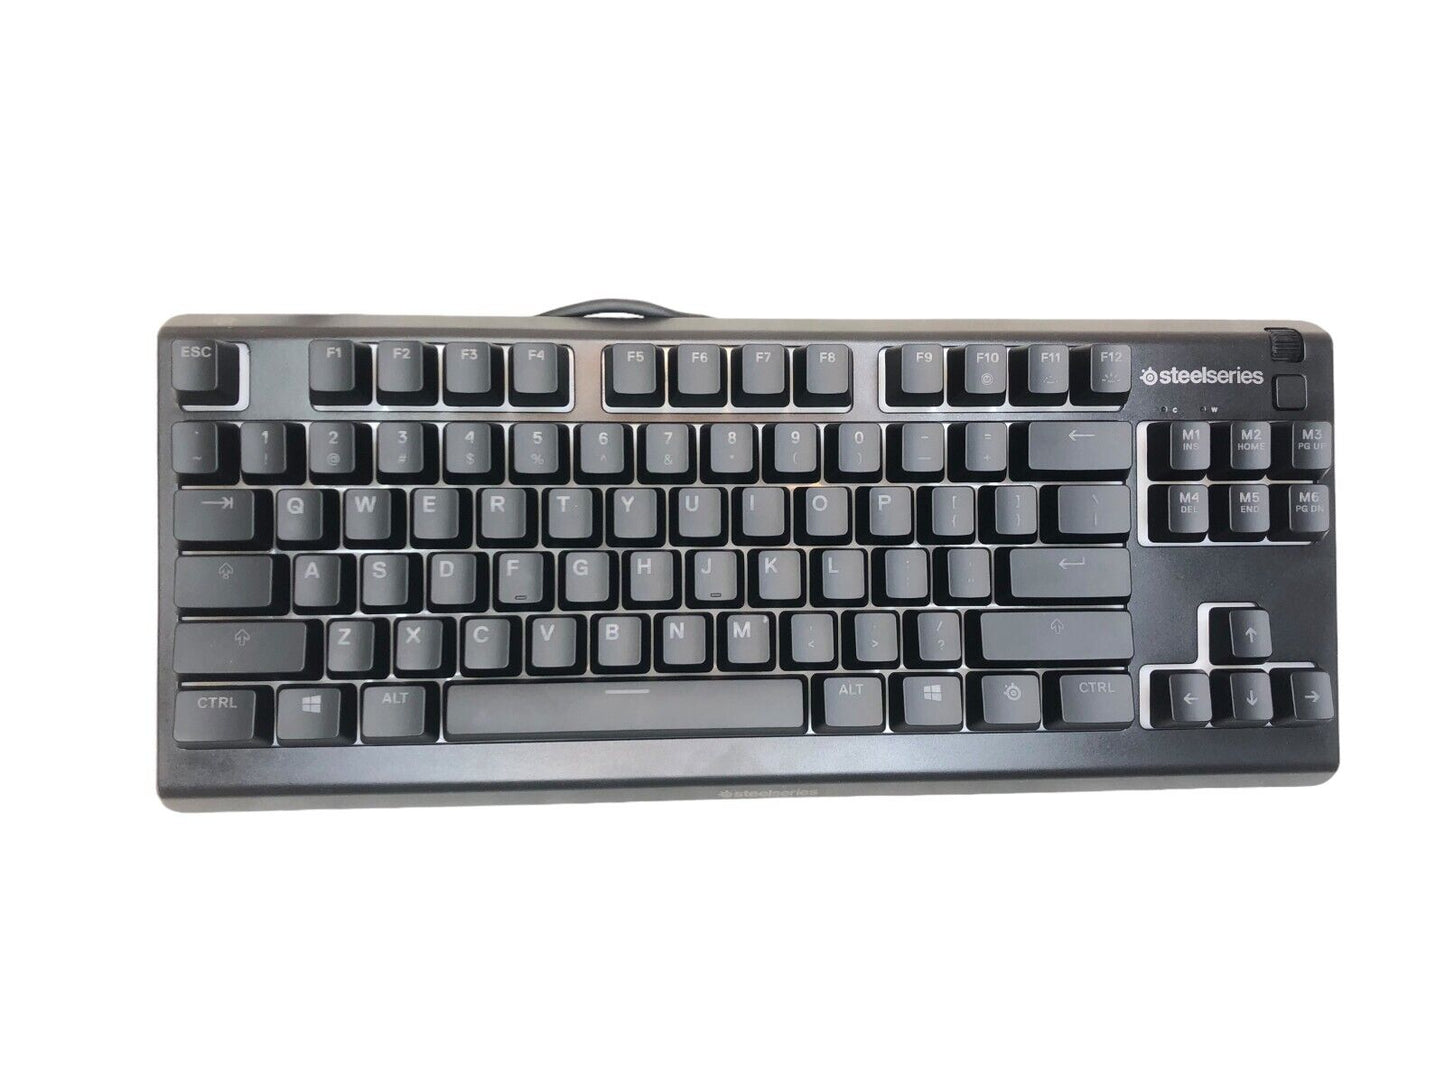 SteelSeries 12167 Apex 3 TKL RGB Gaming Keyboard New